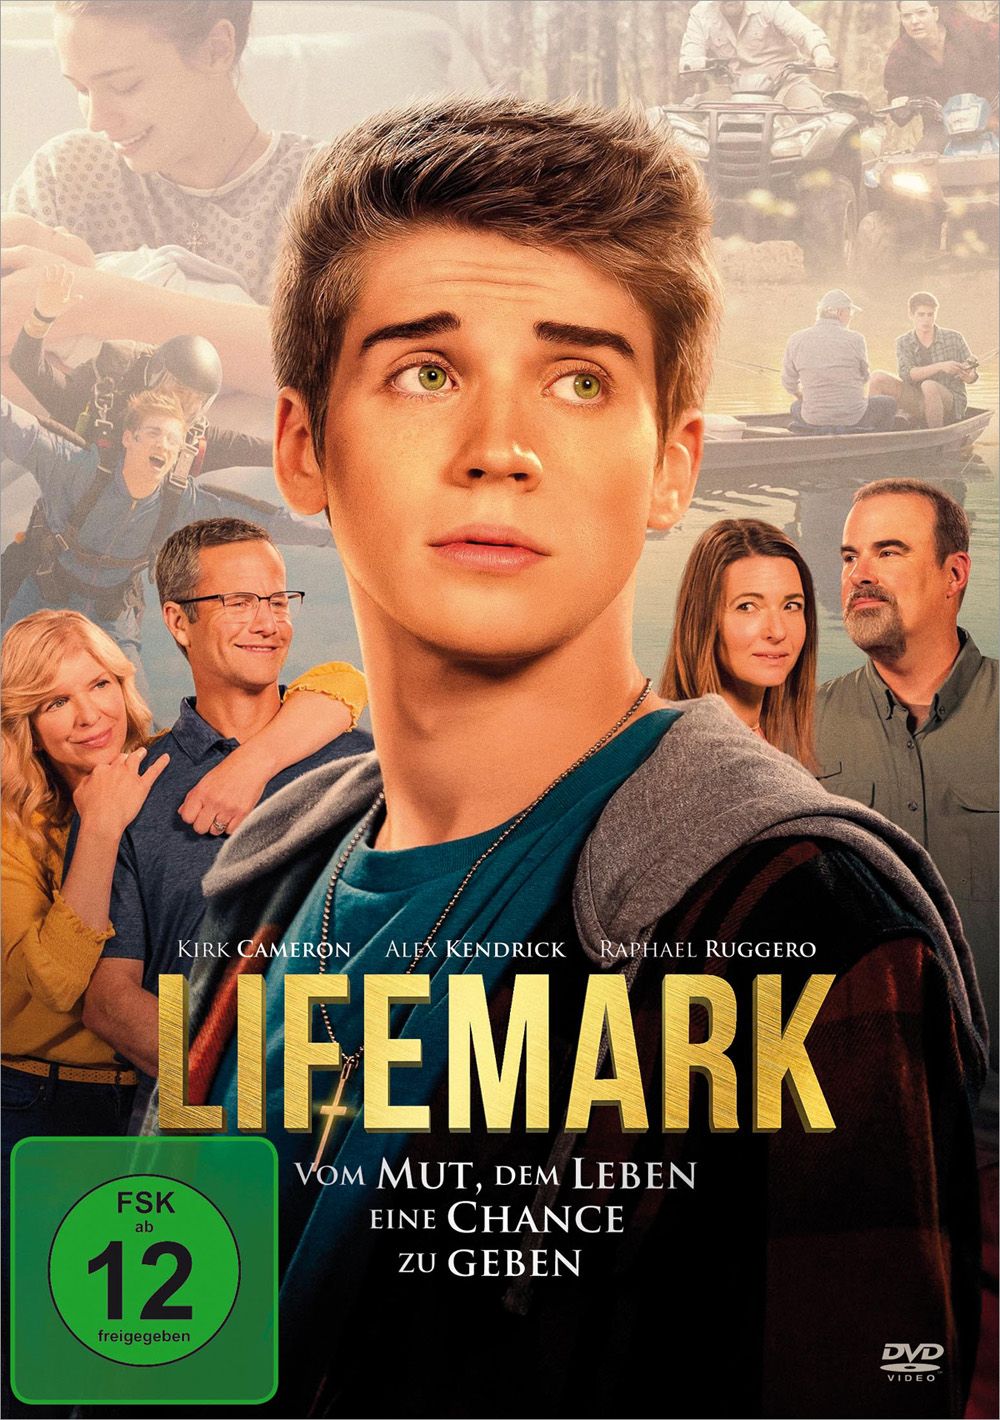 Lifemark - Vom Mut. dem Leben eine Chance zu geben (DVD)